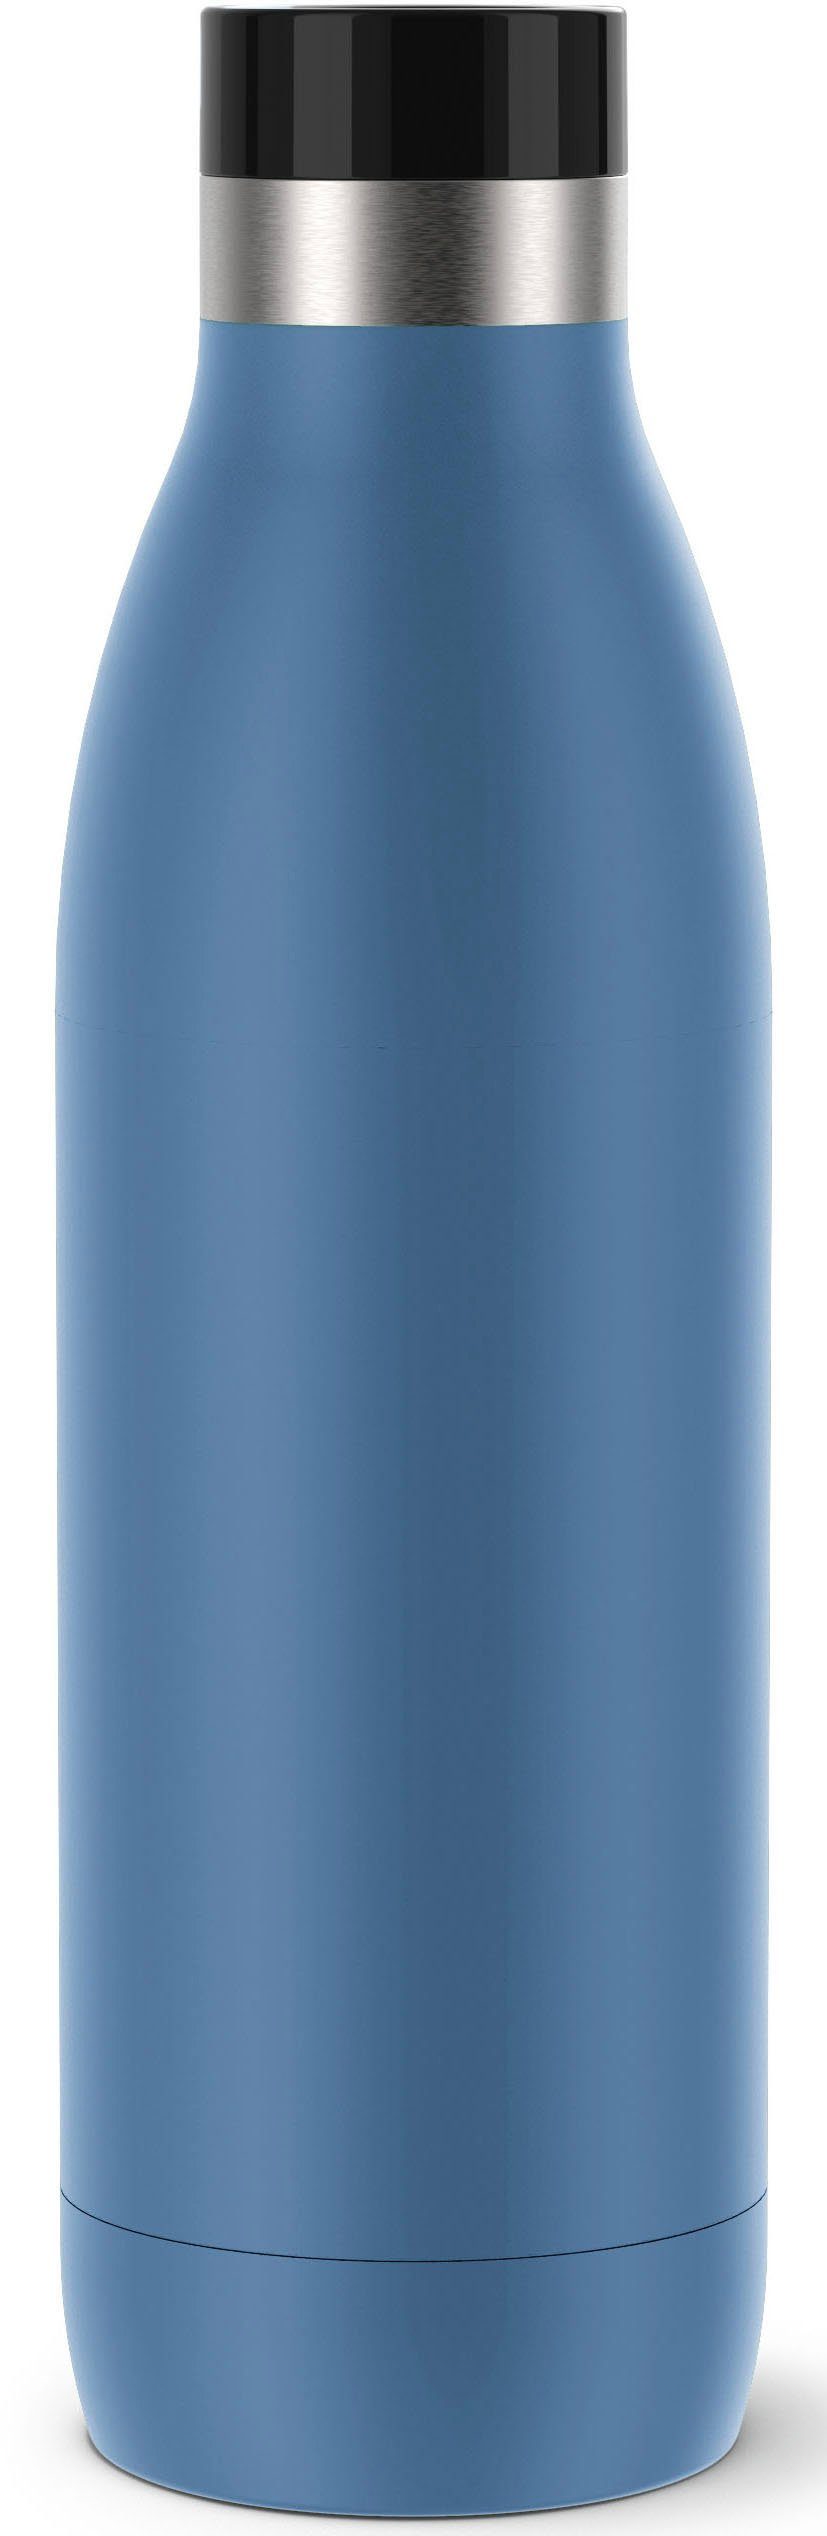 Emsa Isolierflasche Bludrop, Quick-Press Verschluss, 360° Trinkgenuss, 12 h  warm, 24 h kühl, 0,7 L